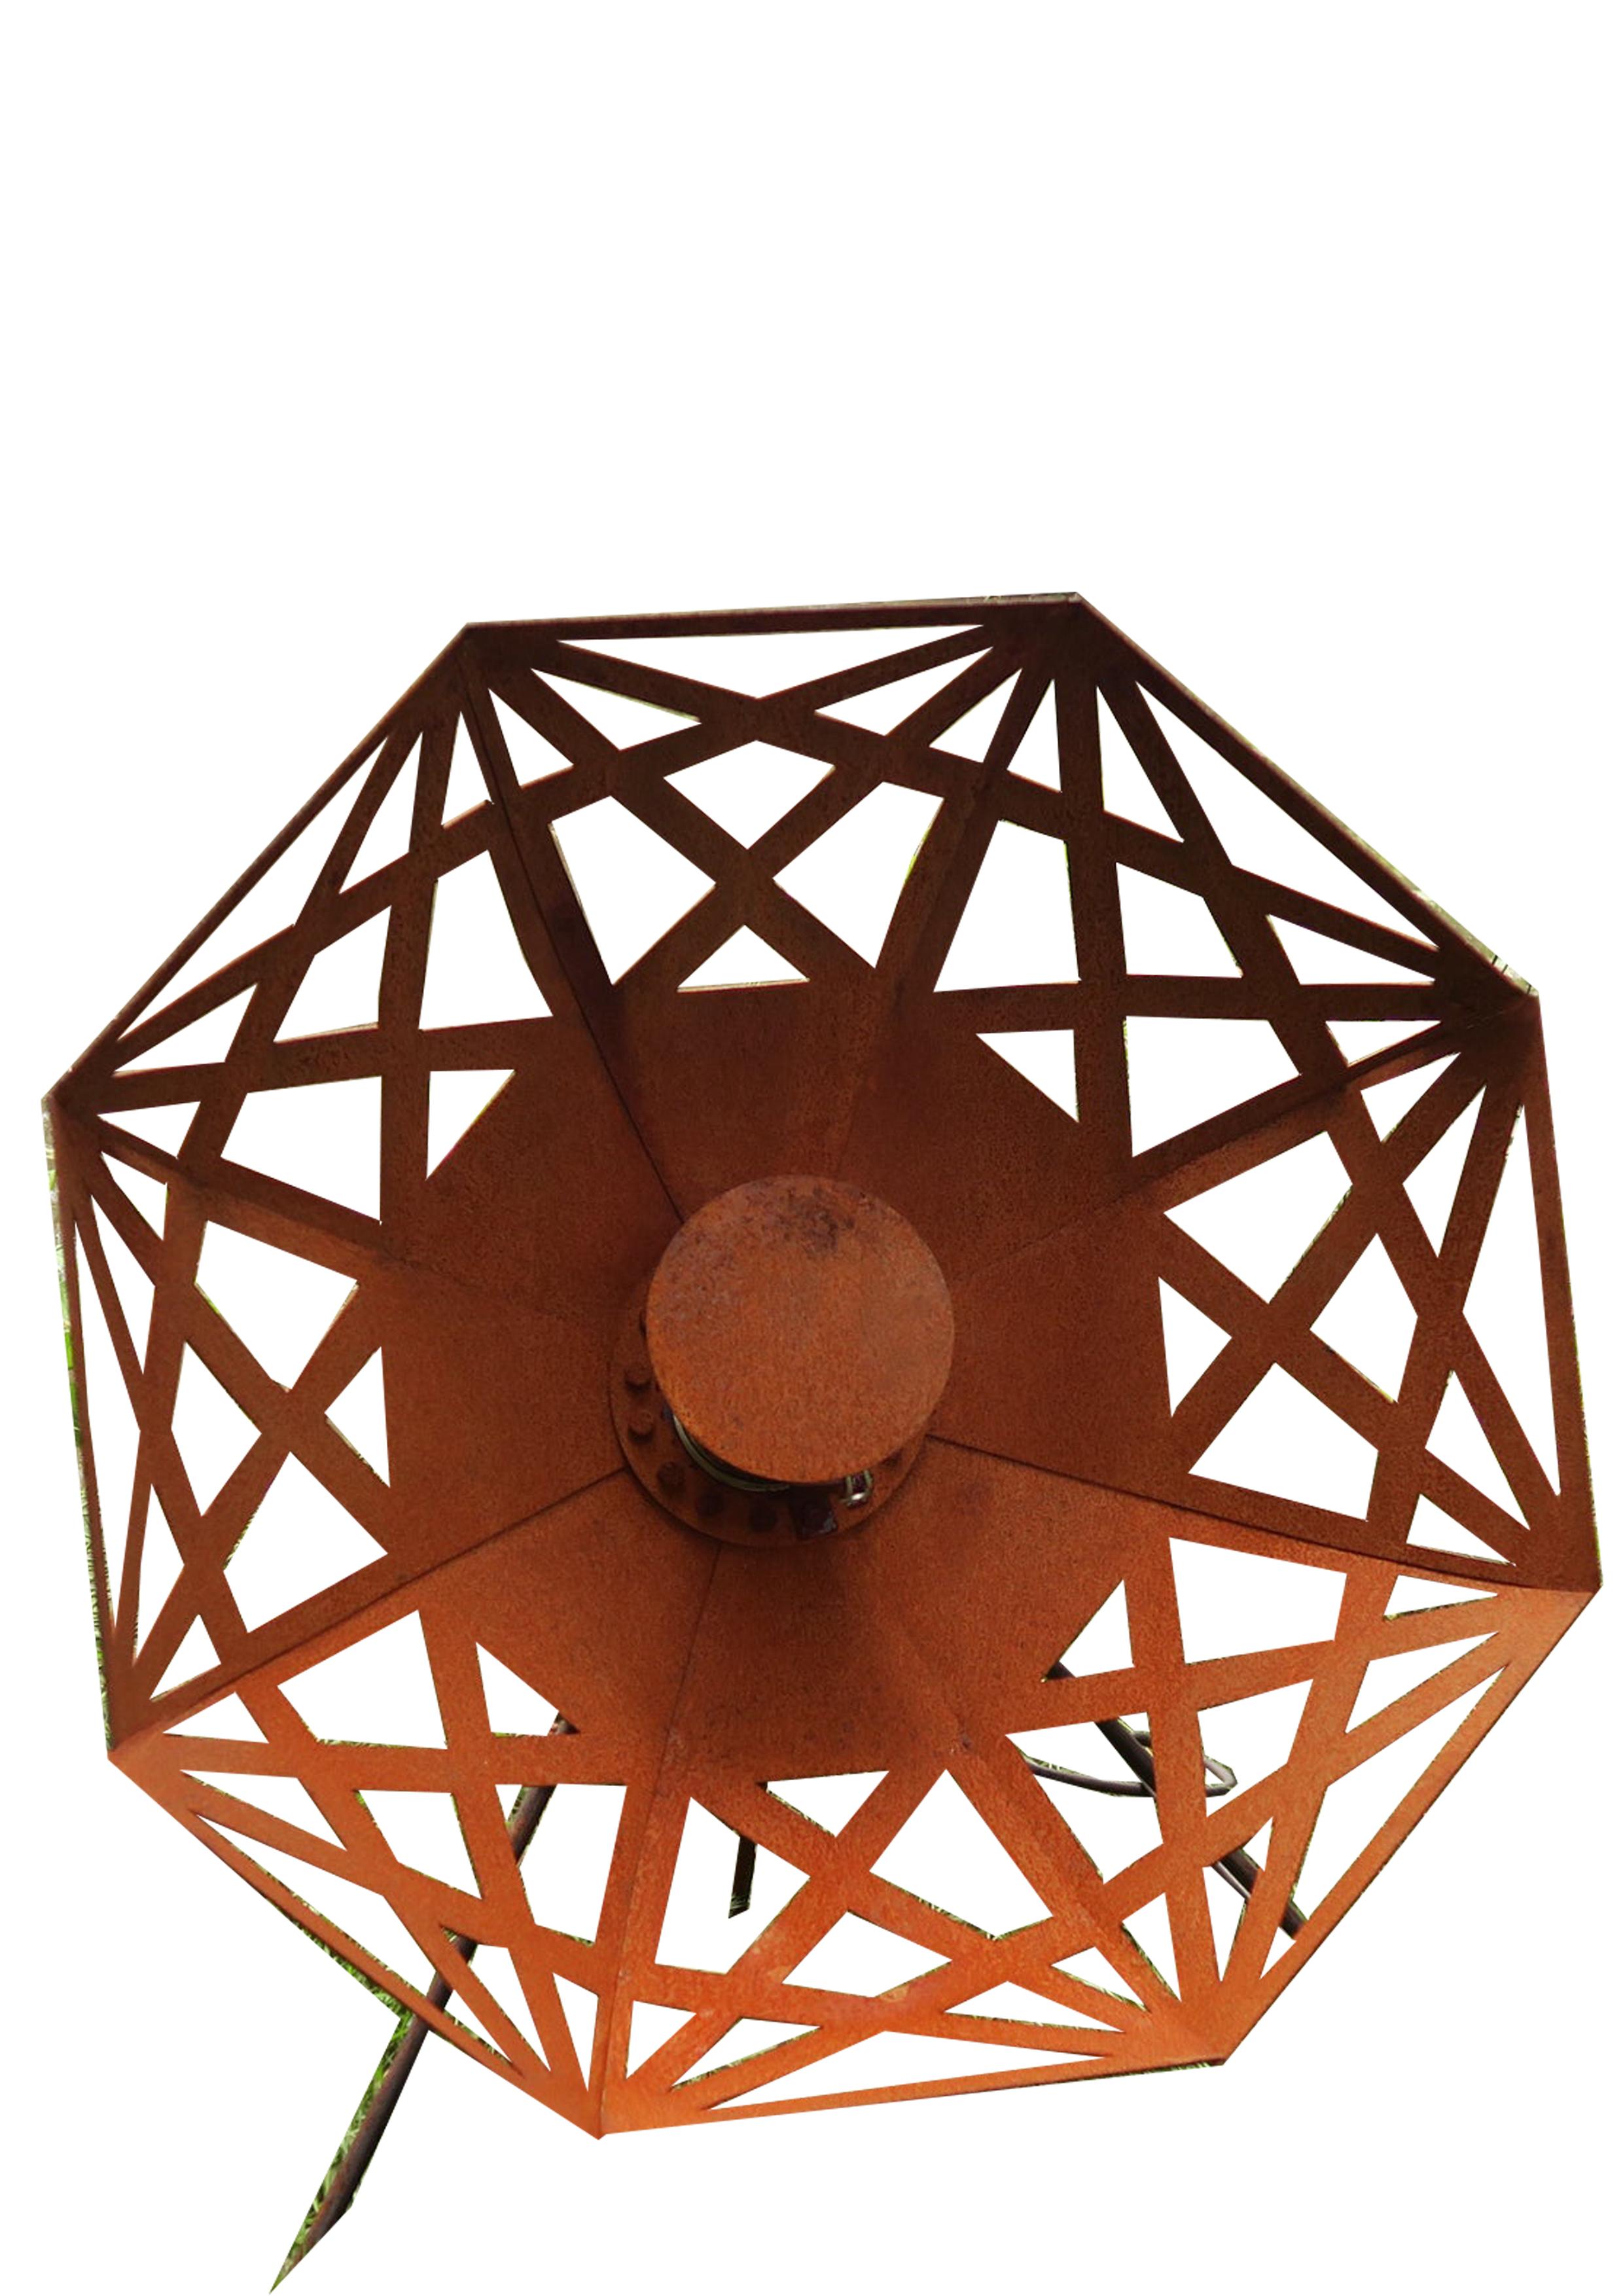 Lampe d'extérieur - "Umbrella" (Beta) - rouille - Décoration de jardin d'art - 70 cm - Mixed Media Art de Stefan Traloc